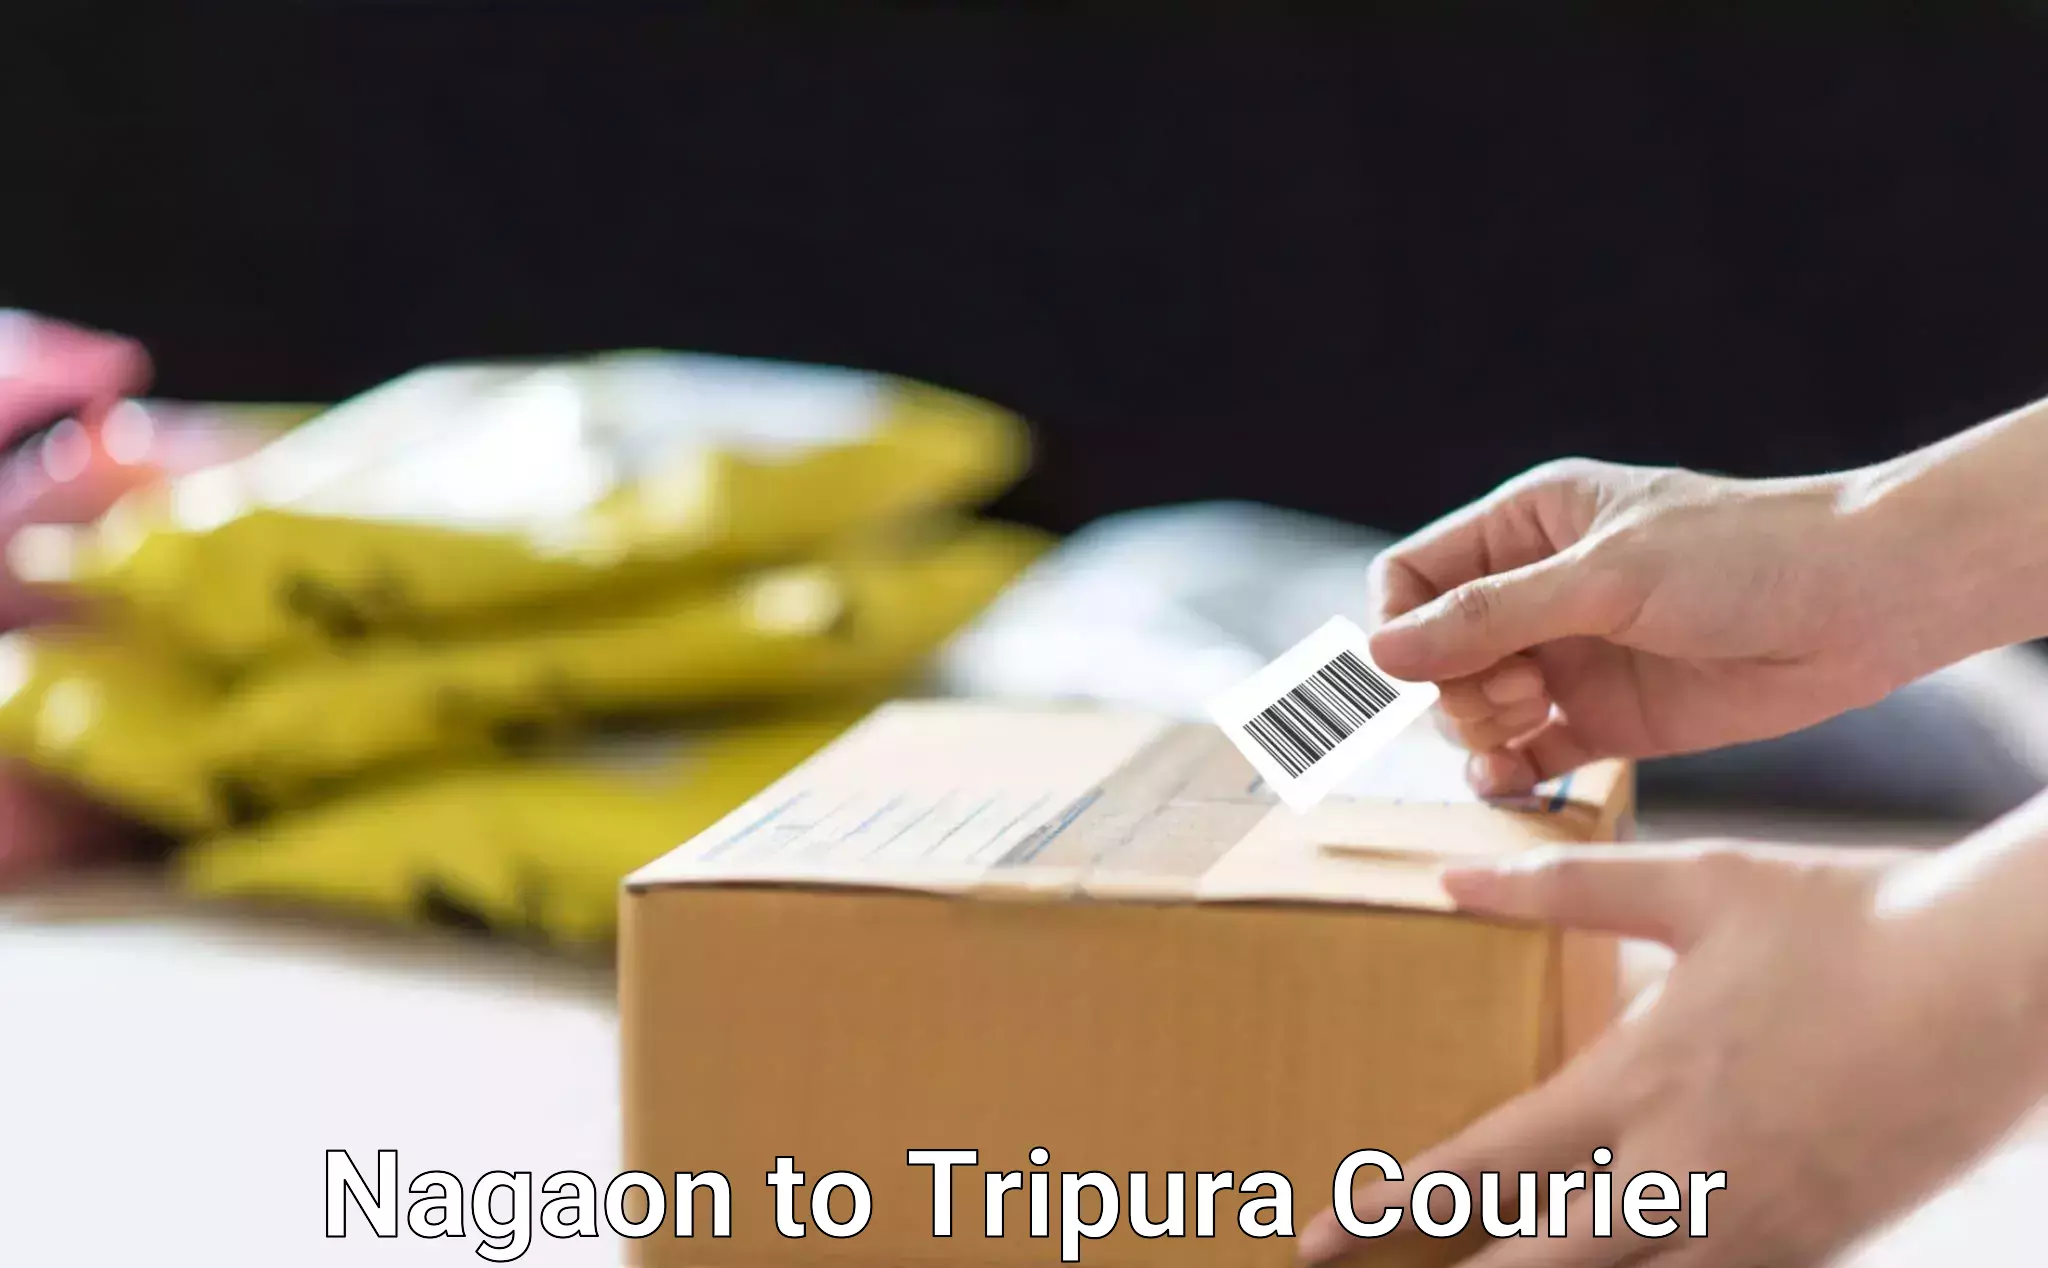 Efficient order fulfillment in Nagaon to IIIT Agartala